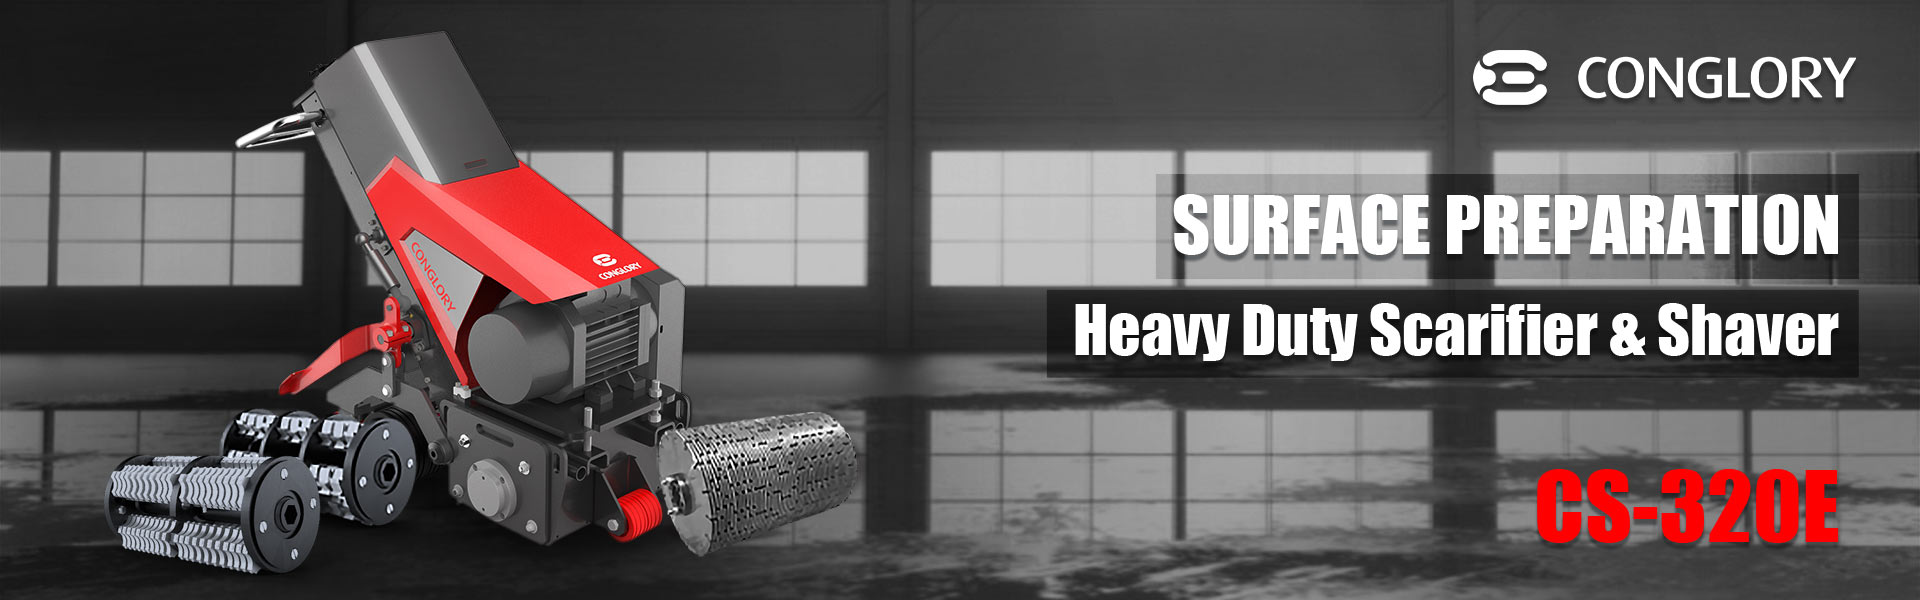 Heavy Duty Concrete Floor Scarifier